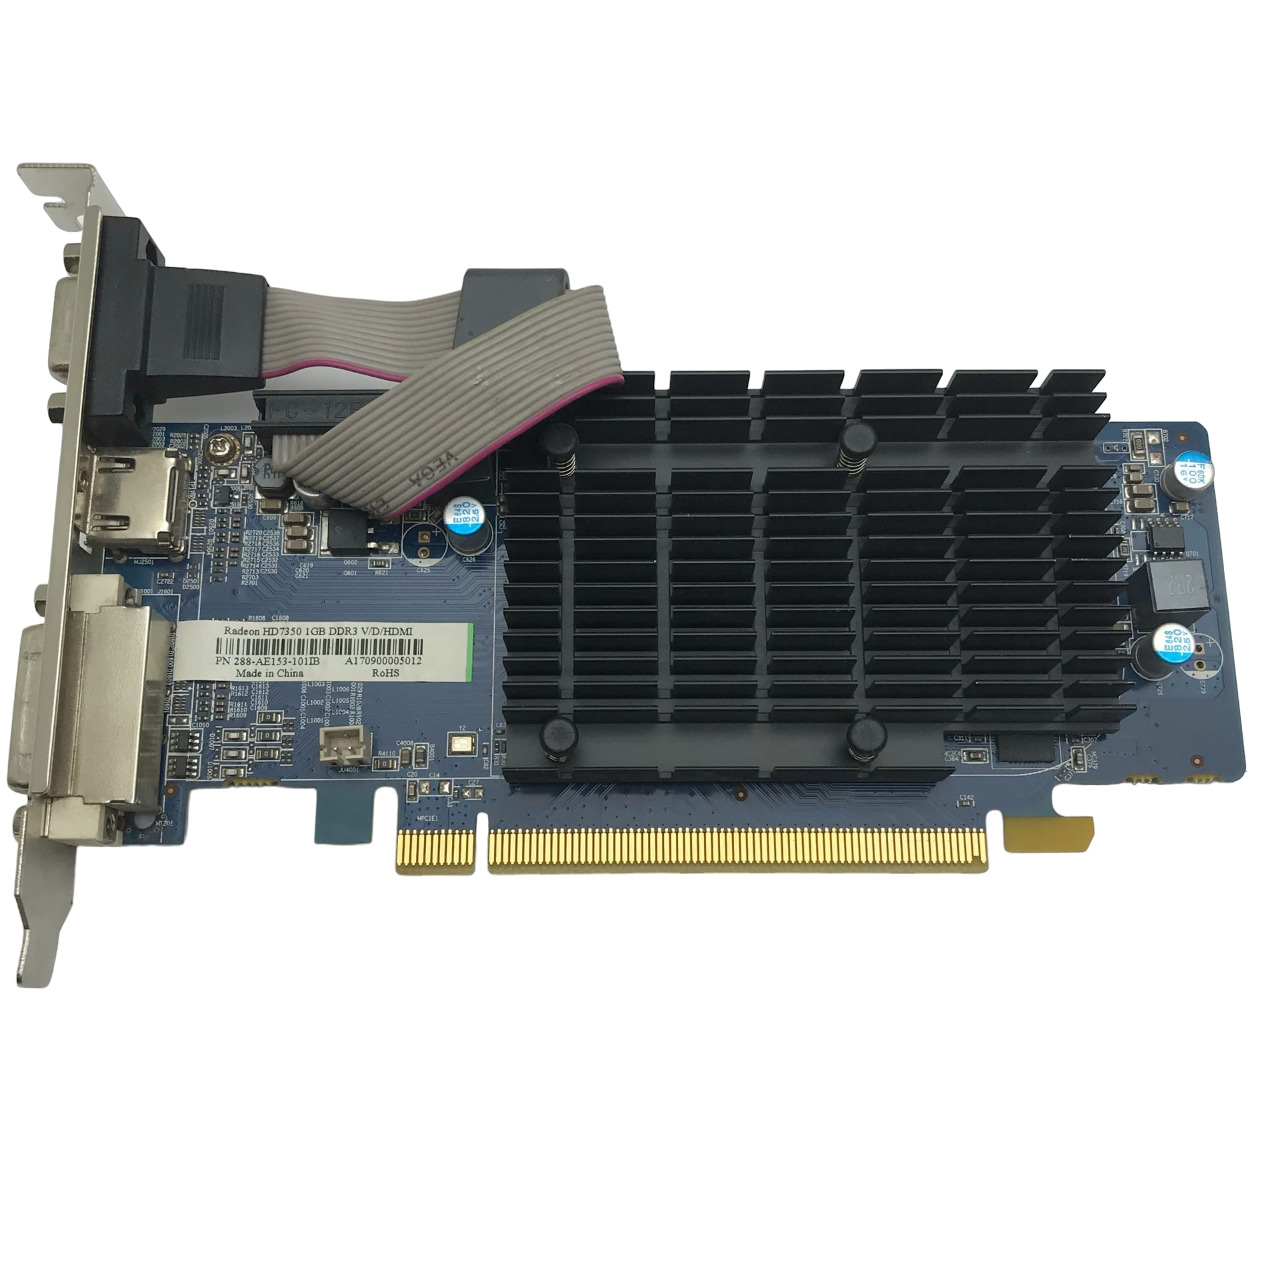 Видеокарта AMD Radeon HD 7350 PCI-E 1Gb DDR3, купить в Москве, цены в интернет-магазинах на Мегамаркет